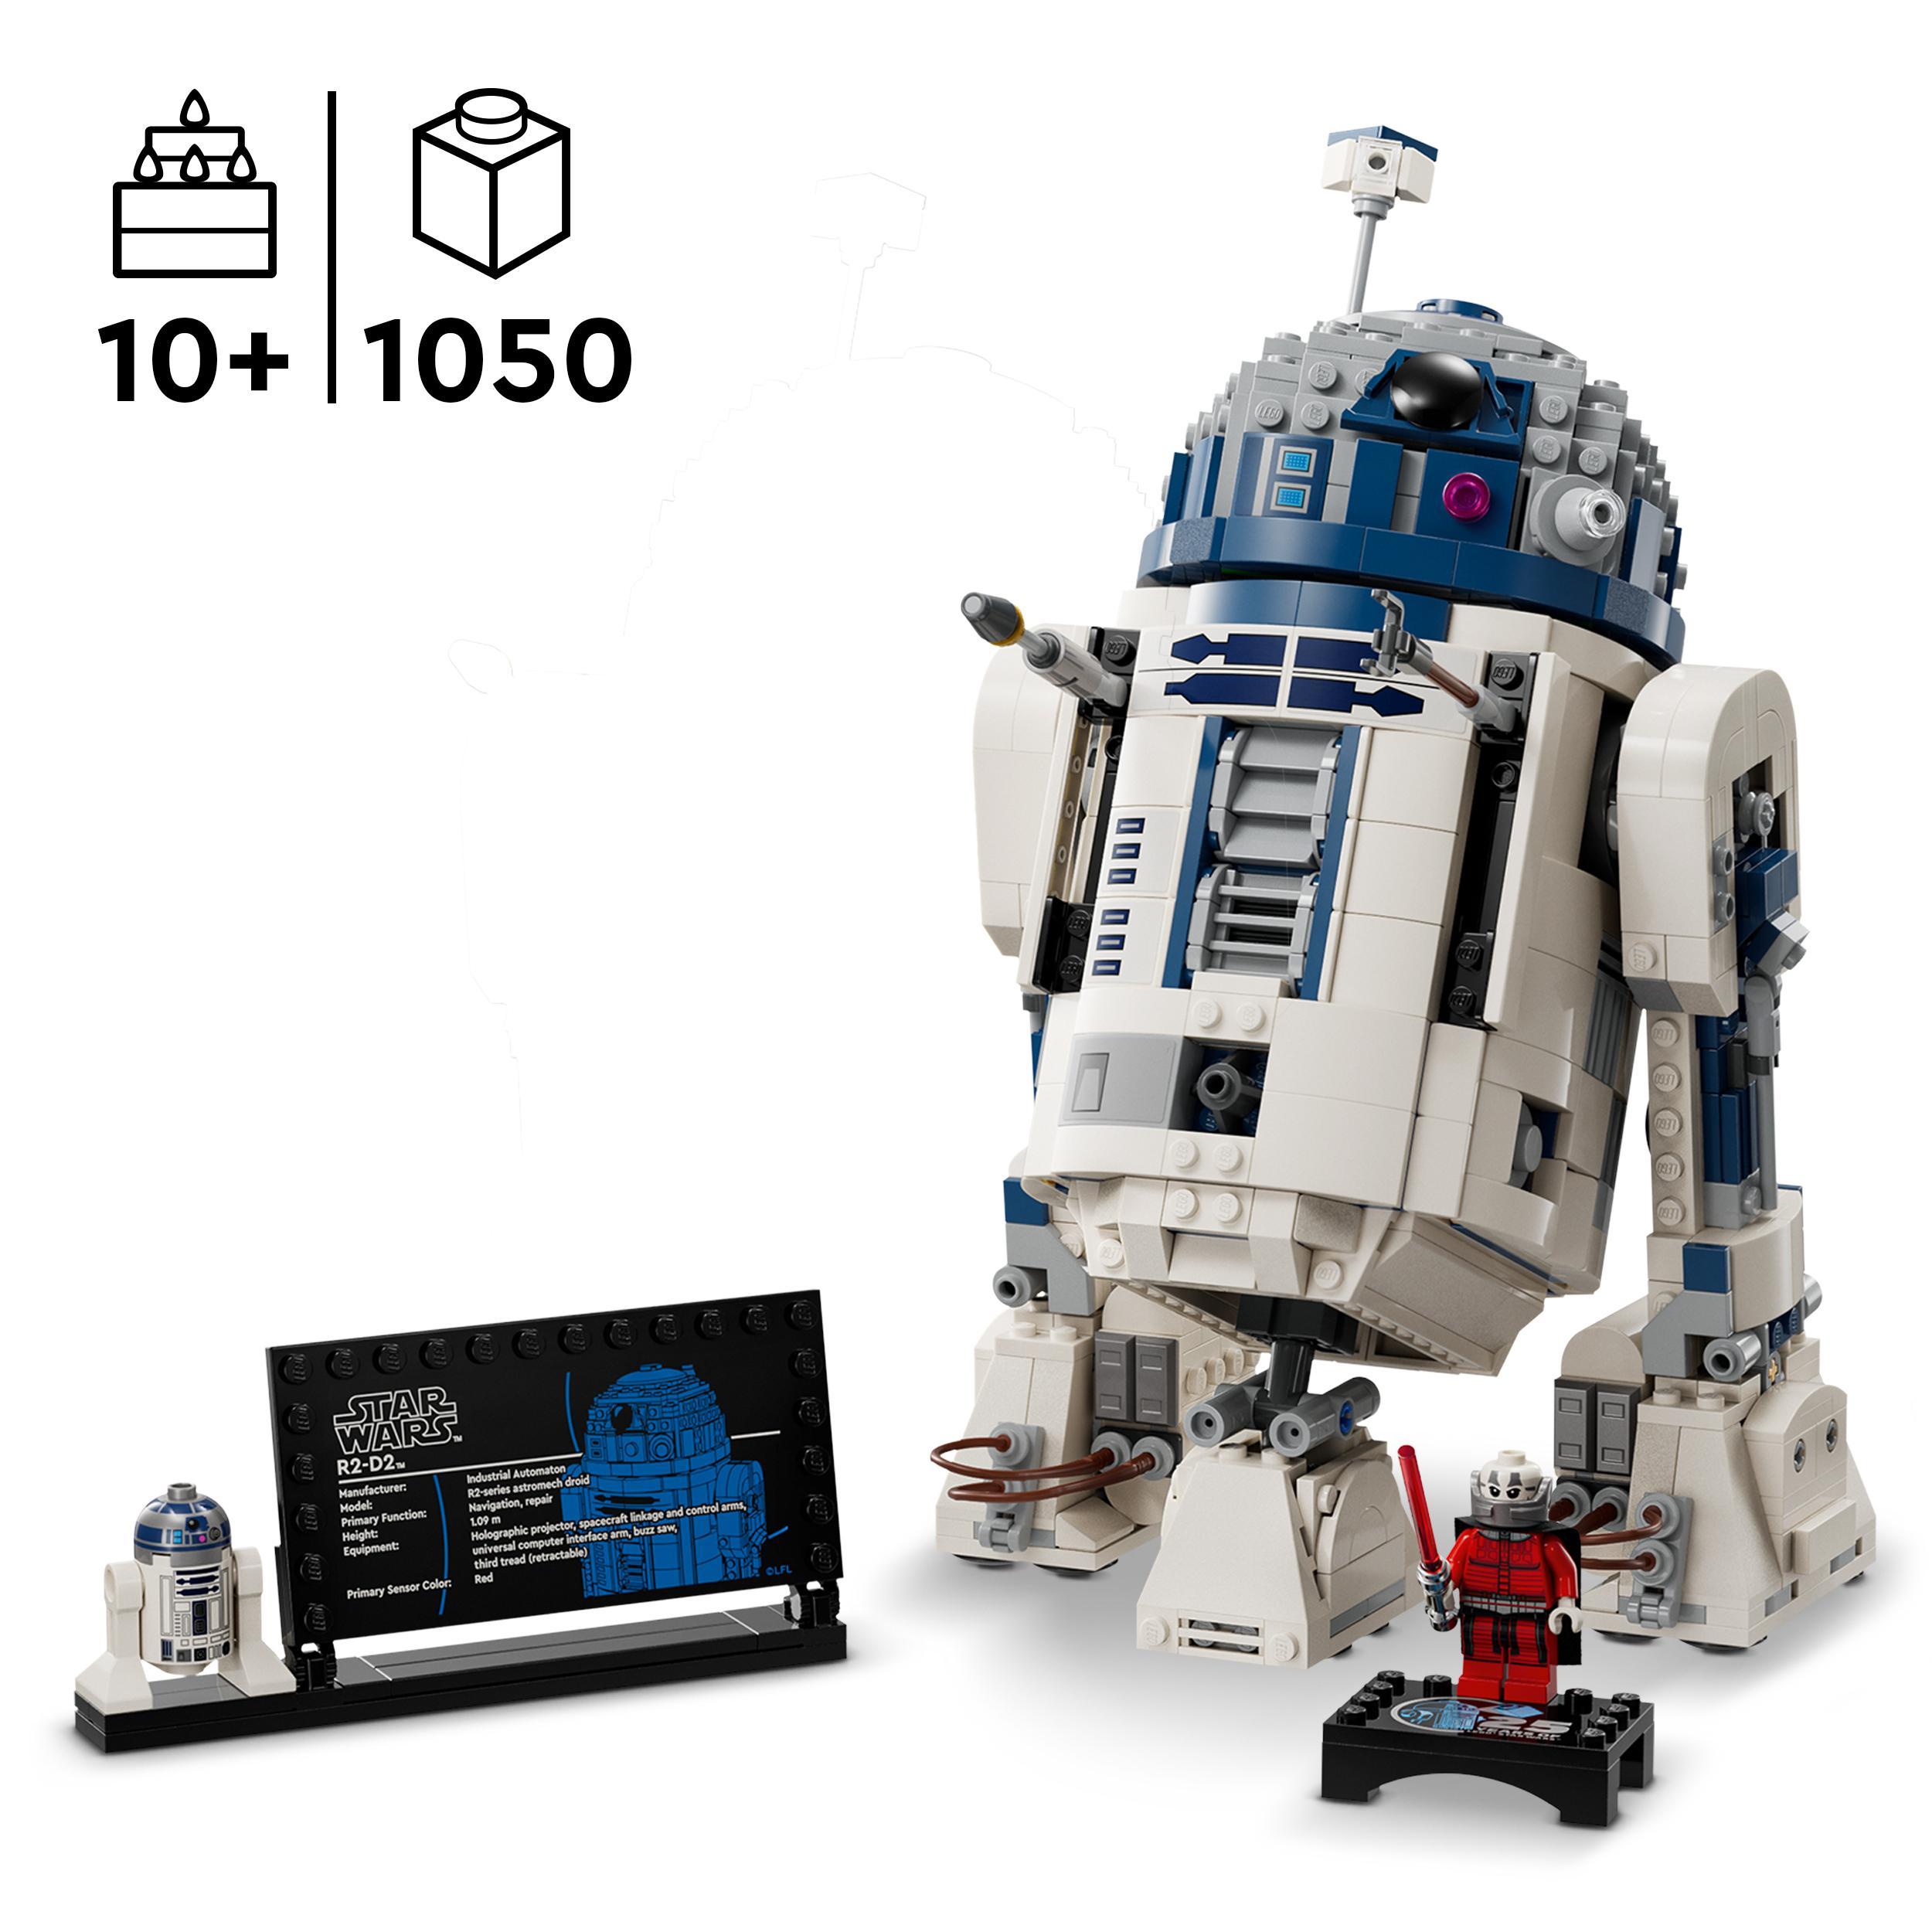 Lego star wars 75379 r2-d2, modellino da costruire di droide con parti mobili e accessori, giochi bambini 10+ con minifigure - LEGO® Star Wars™, Star Wars